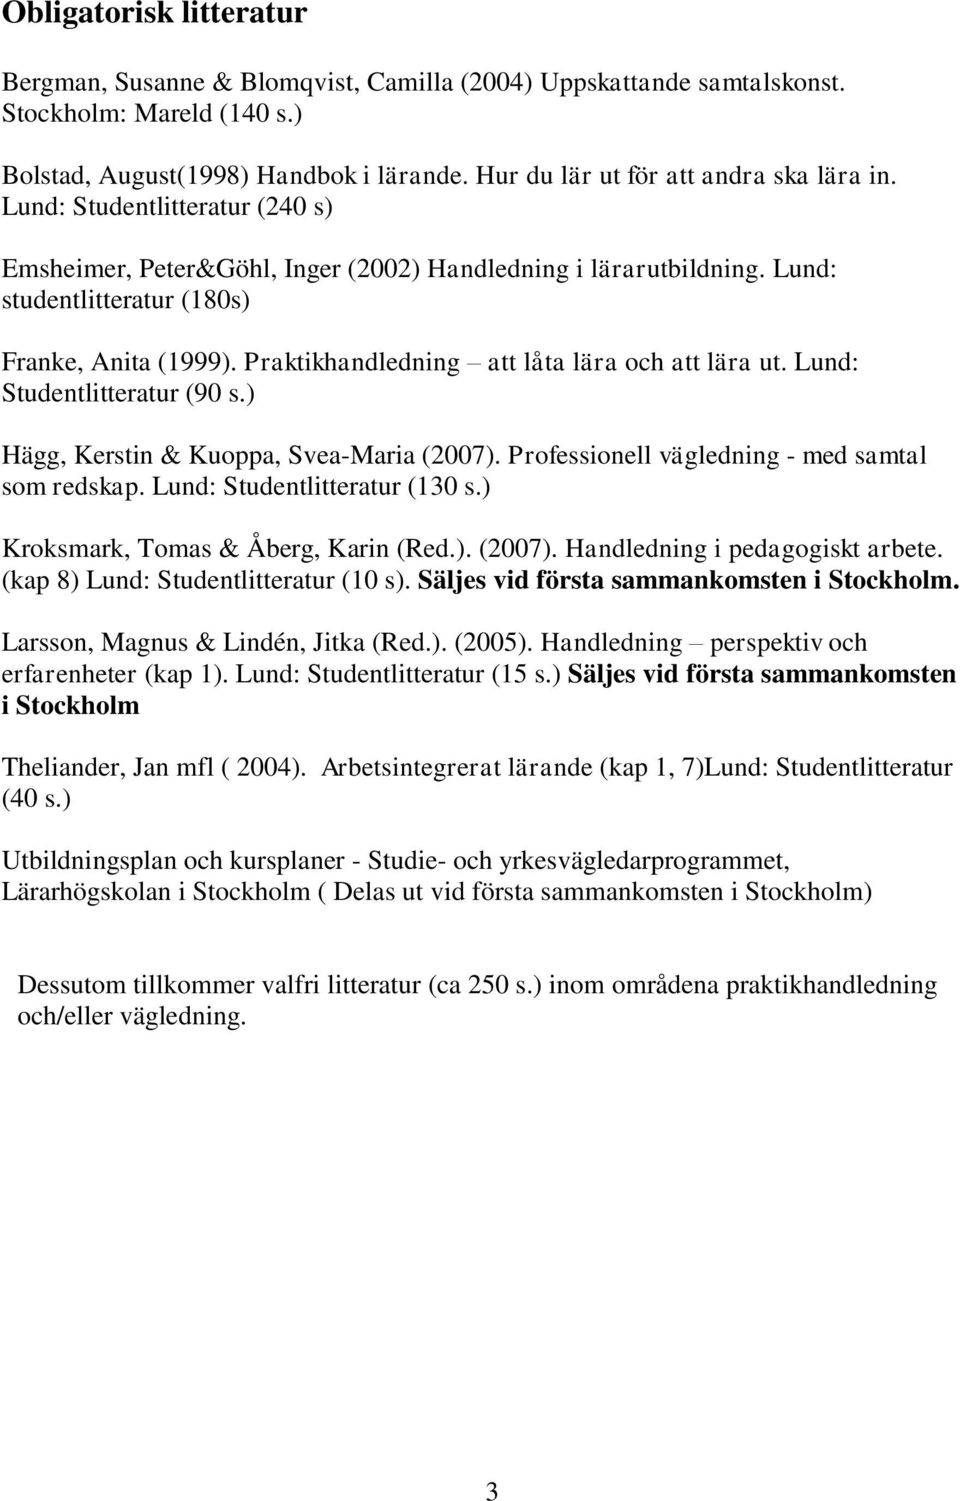 Praktikhandledning att låta lära och att lära ut. Lund: Studentlitteratur (90 s.) Hägg, Kerstin & Kuoppa, Svea-Maria (2007). Professionell vägledning - med samtal som redskap.